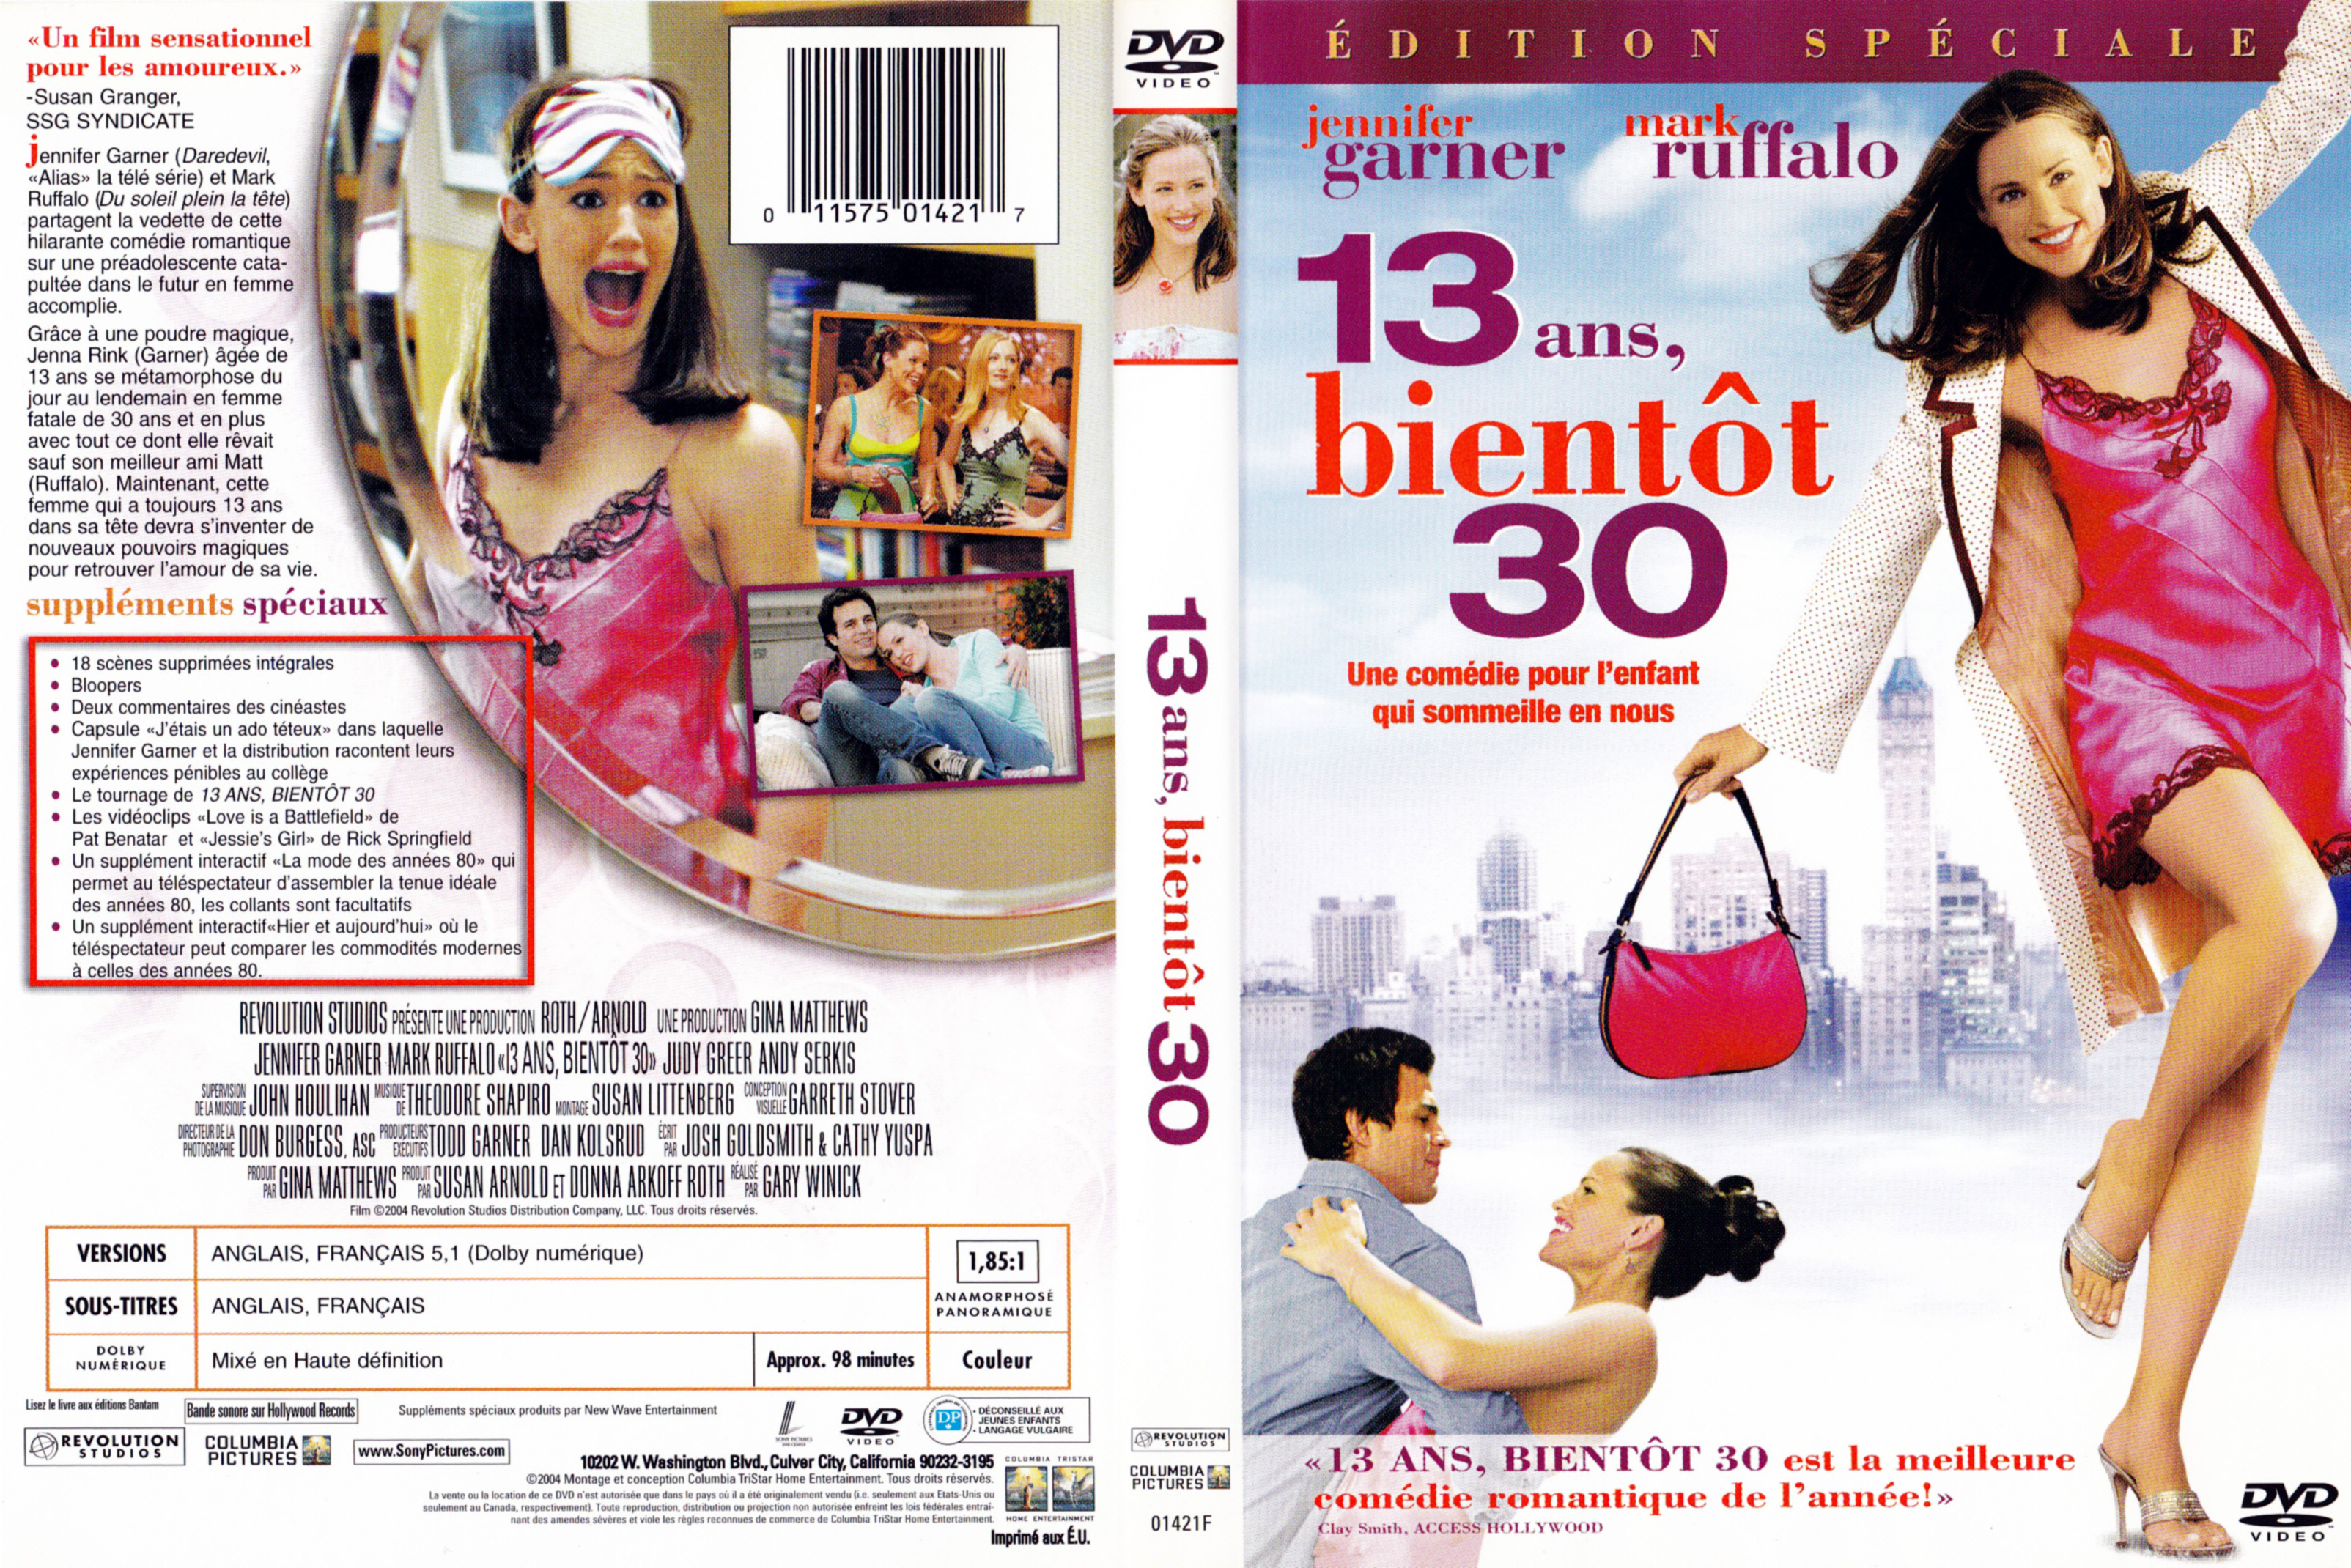 Jaquette DVD 13 ans bientt 30 (Canadienne)